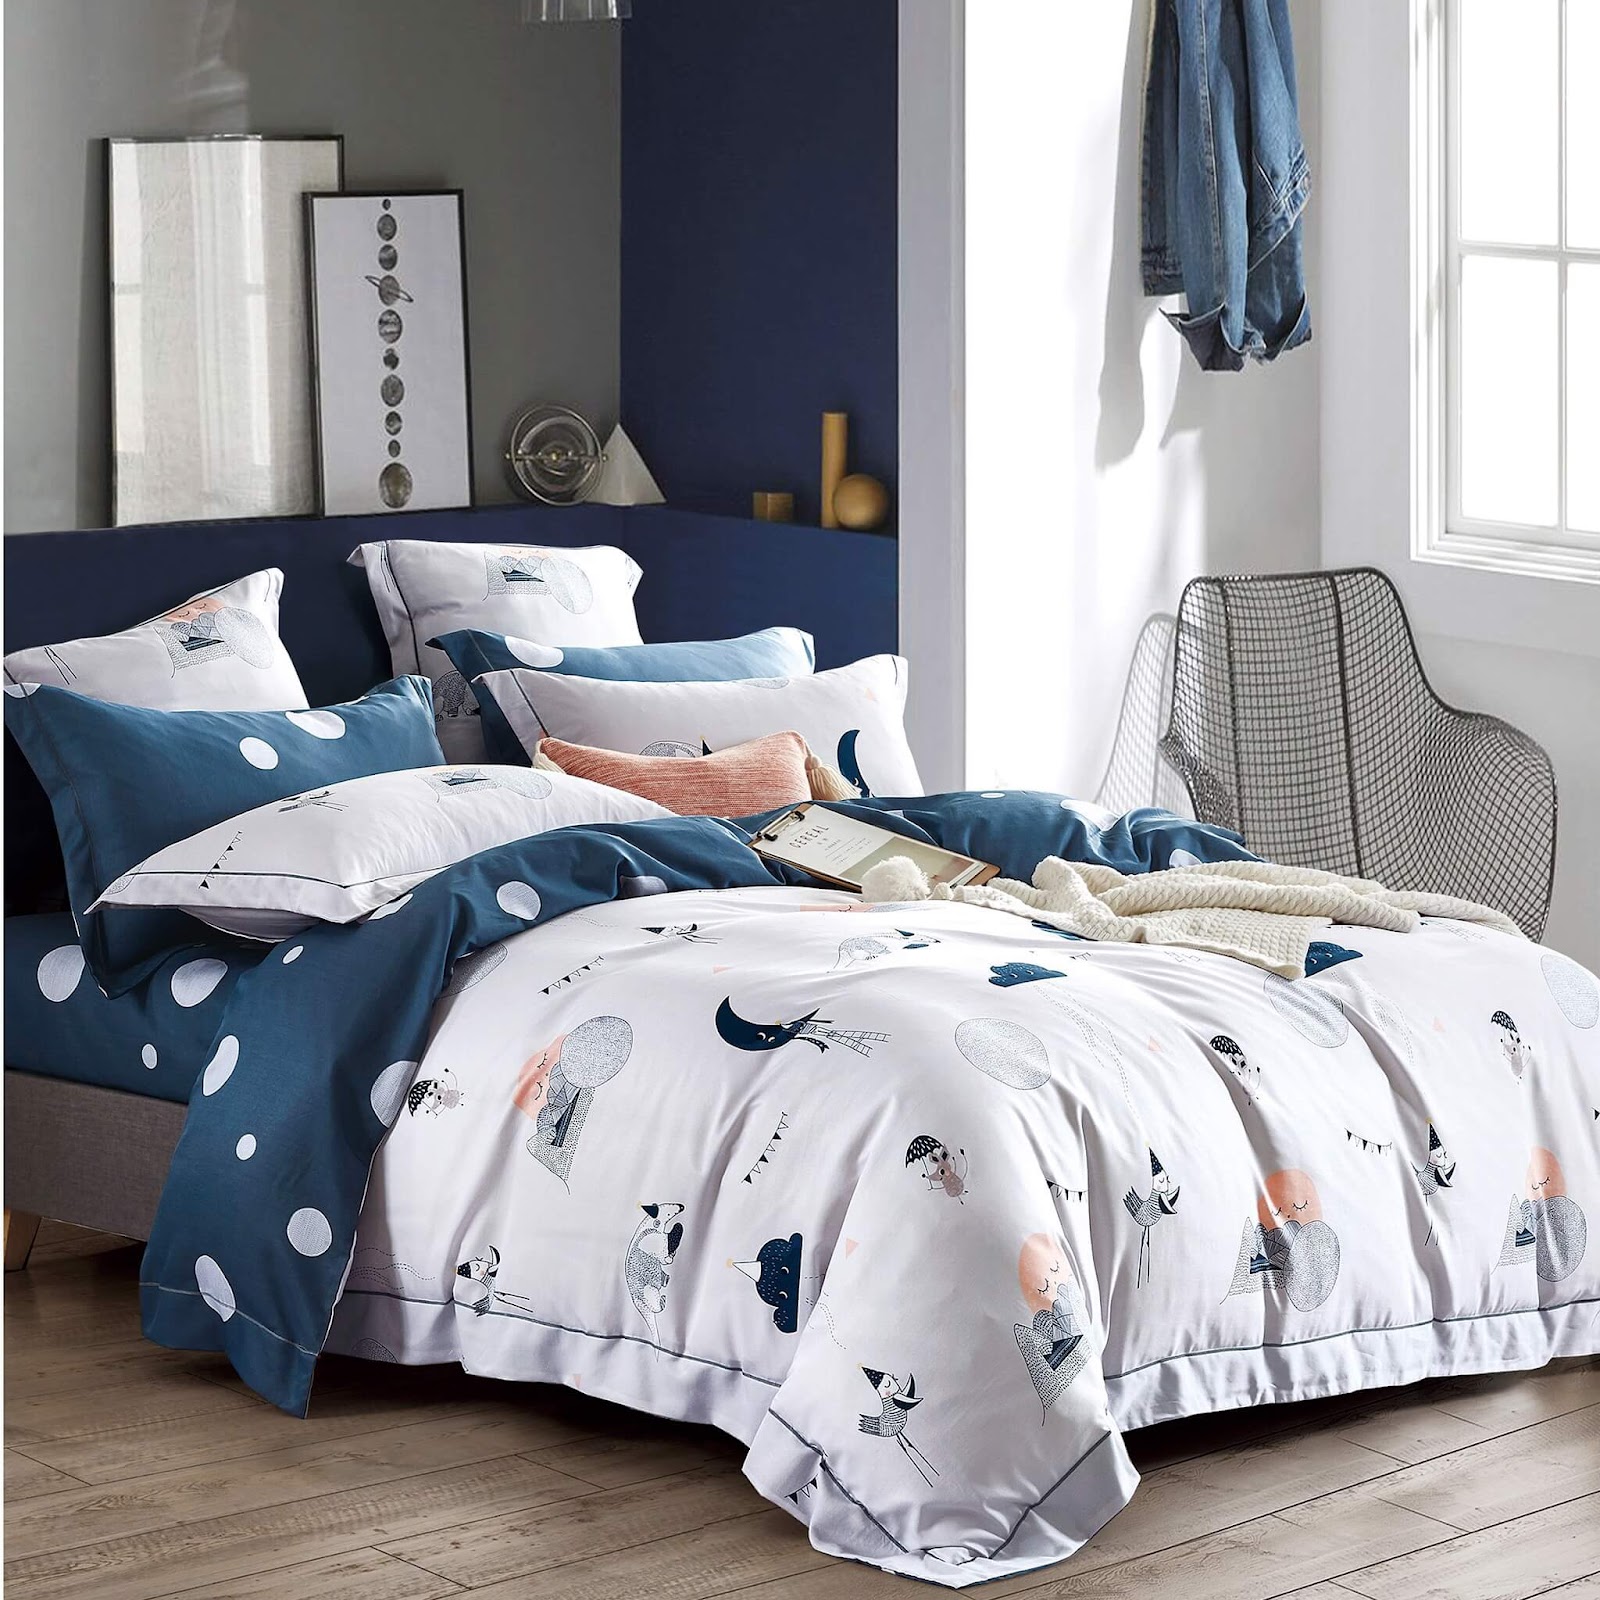 Những chiếc drap giường cotton cũng rất dễ bảo quản, không kén cách giặt giũ nên được nhiều gia đình tin dùng.